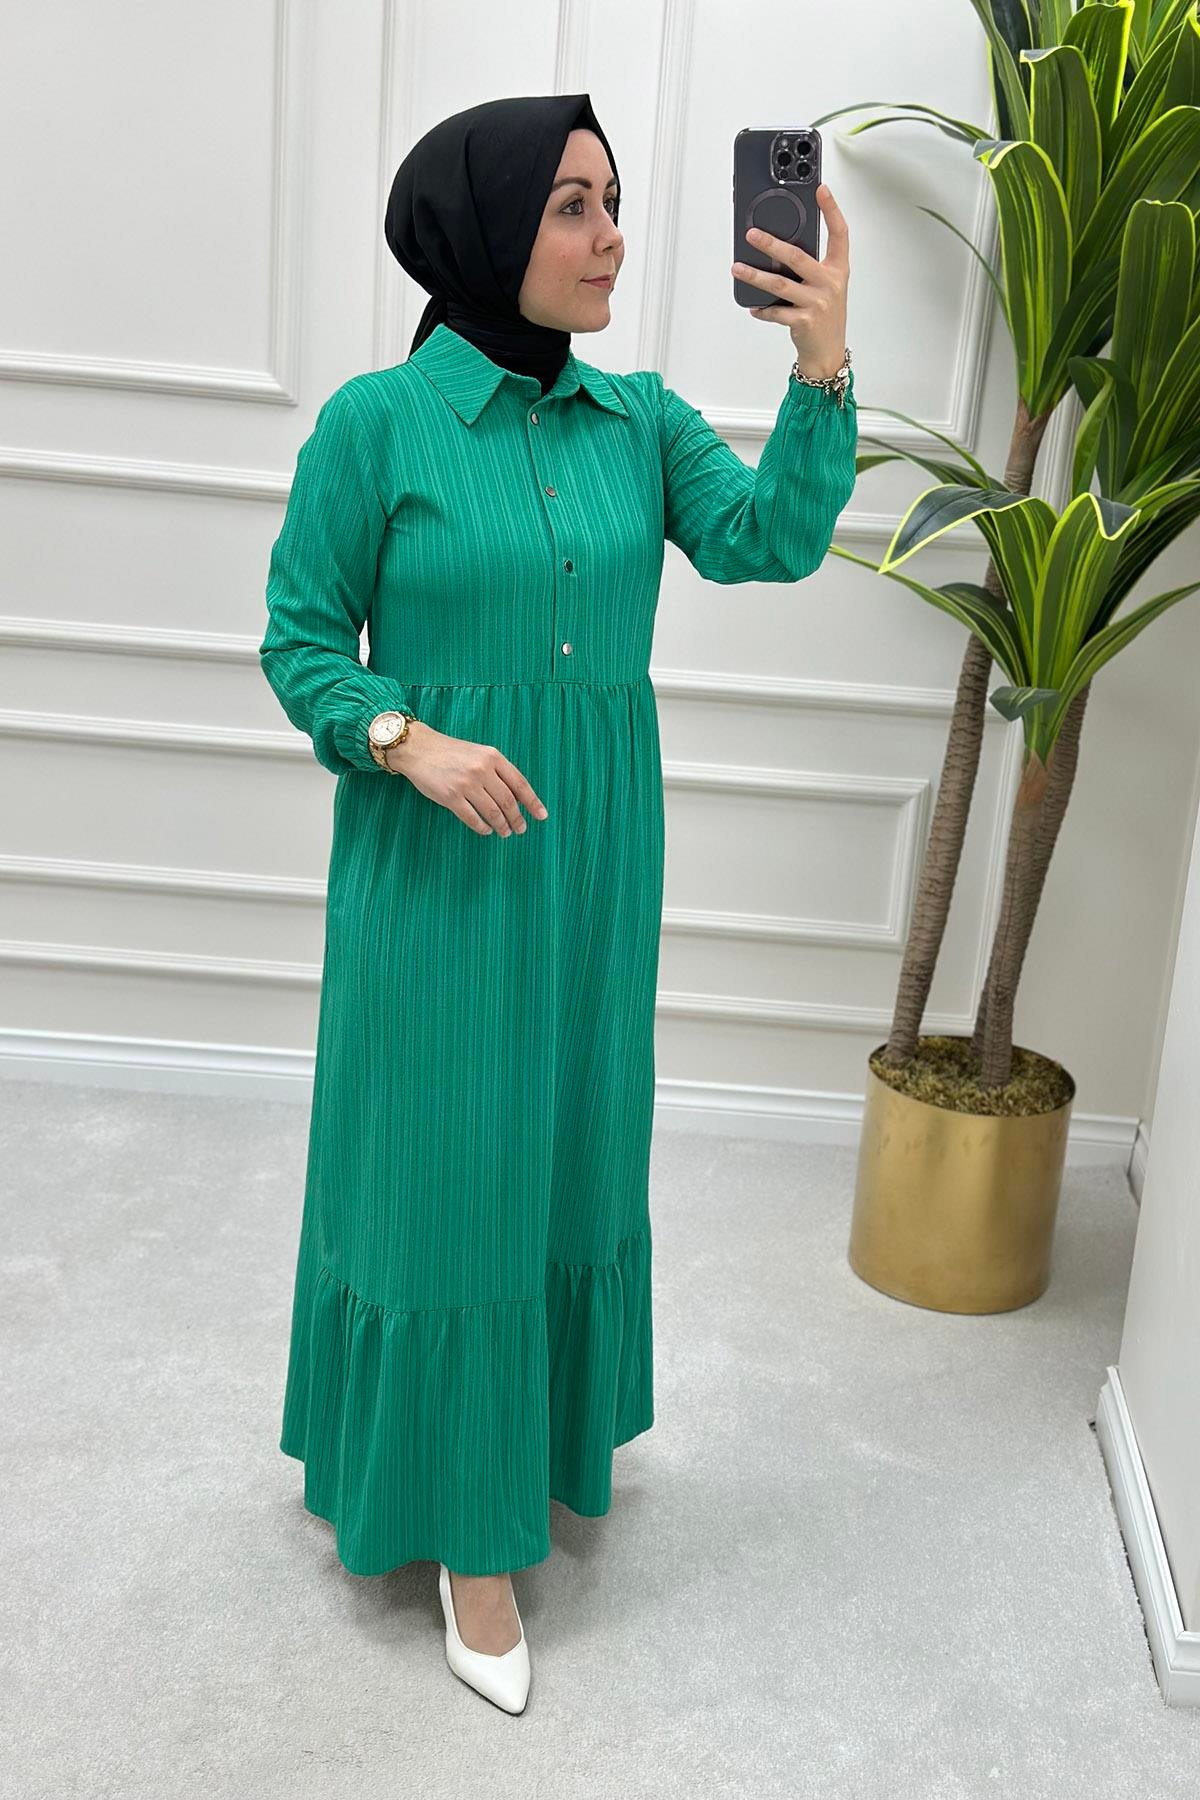 Önü Çıtçıtlı Büzgülü Kadın Elbise Benetton Yeşili CNR 1386 - Elören Giyim